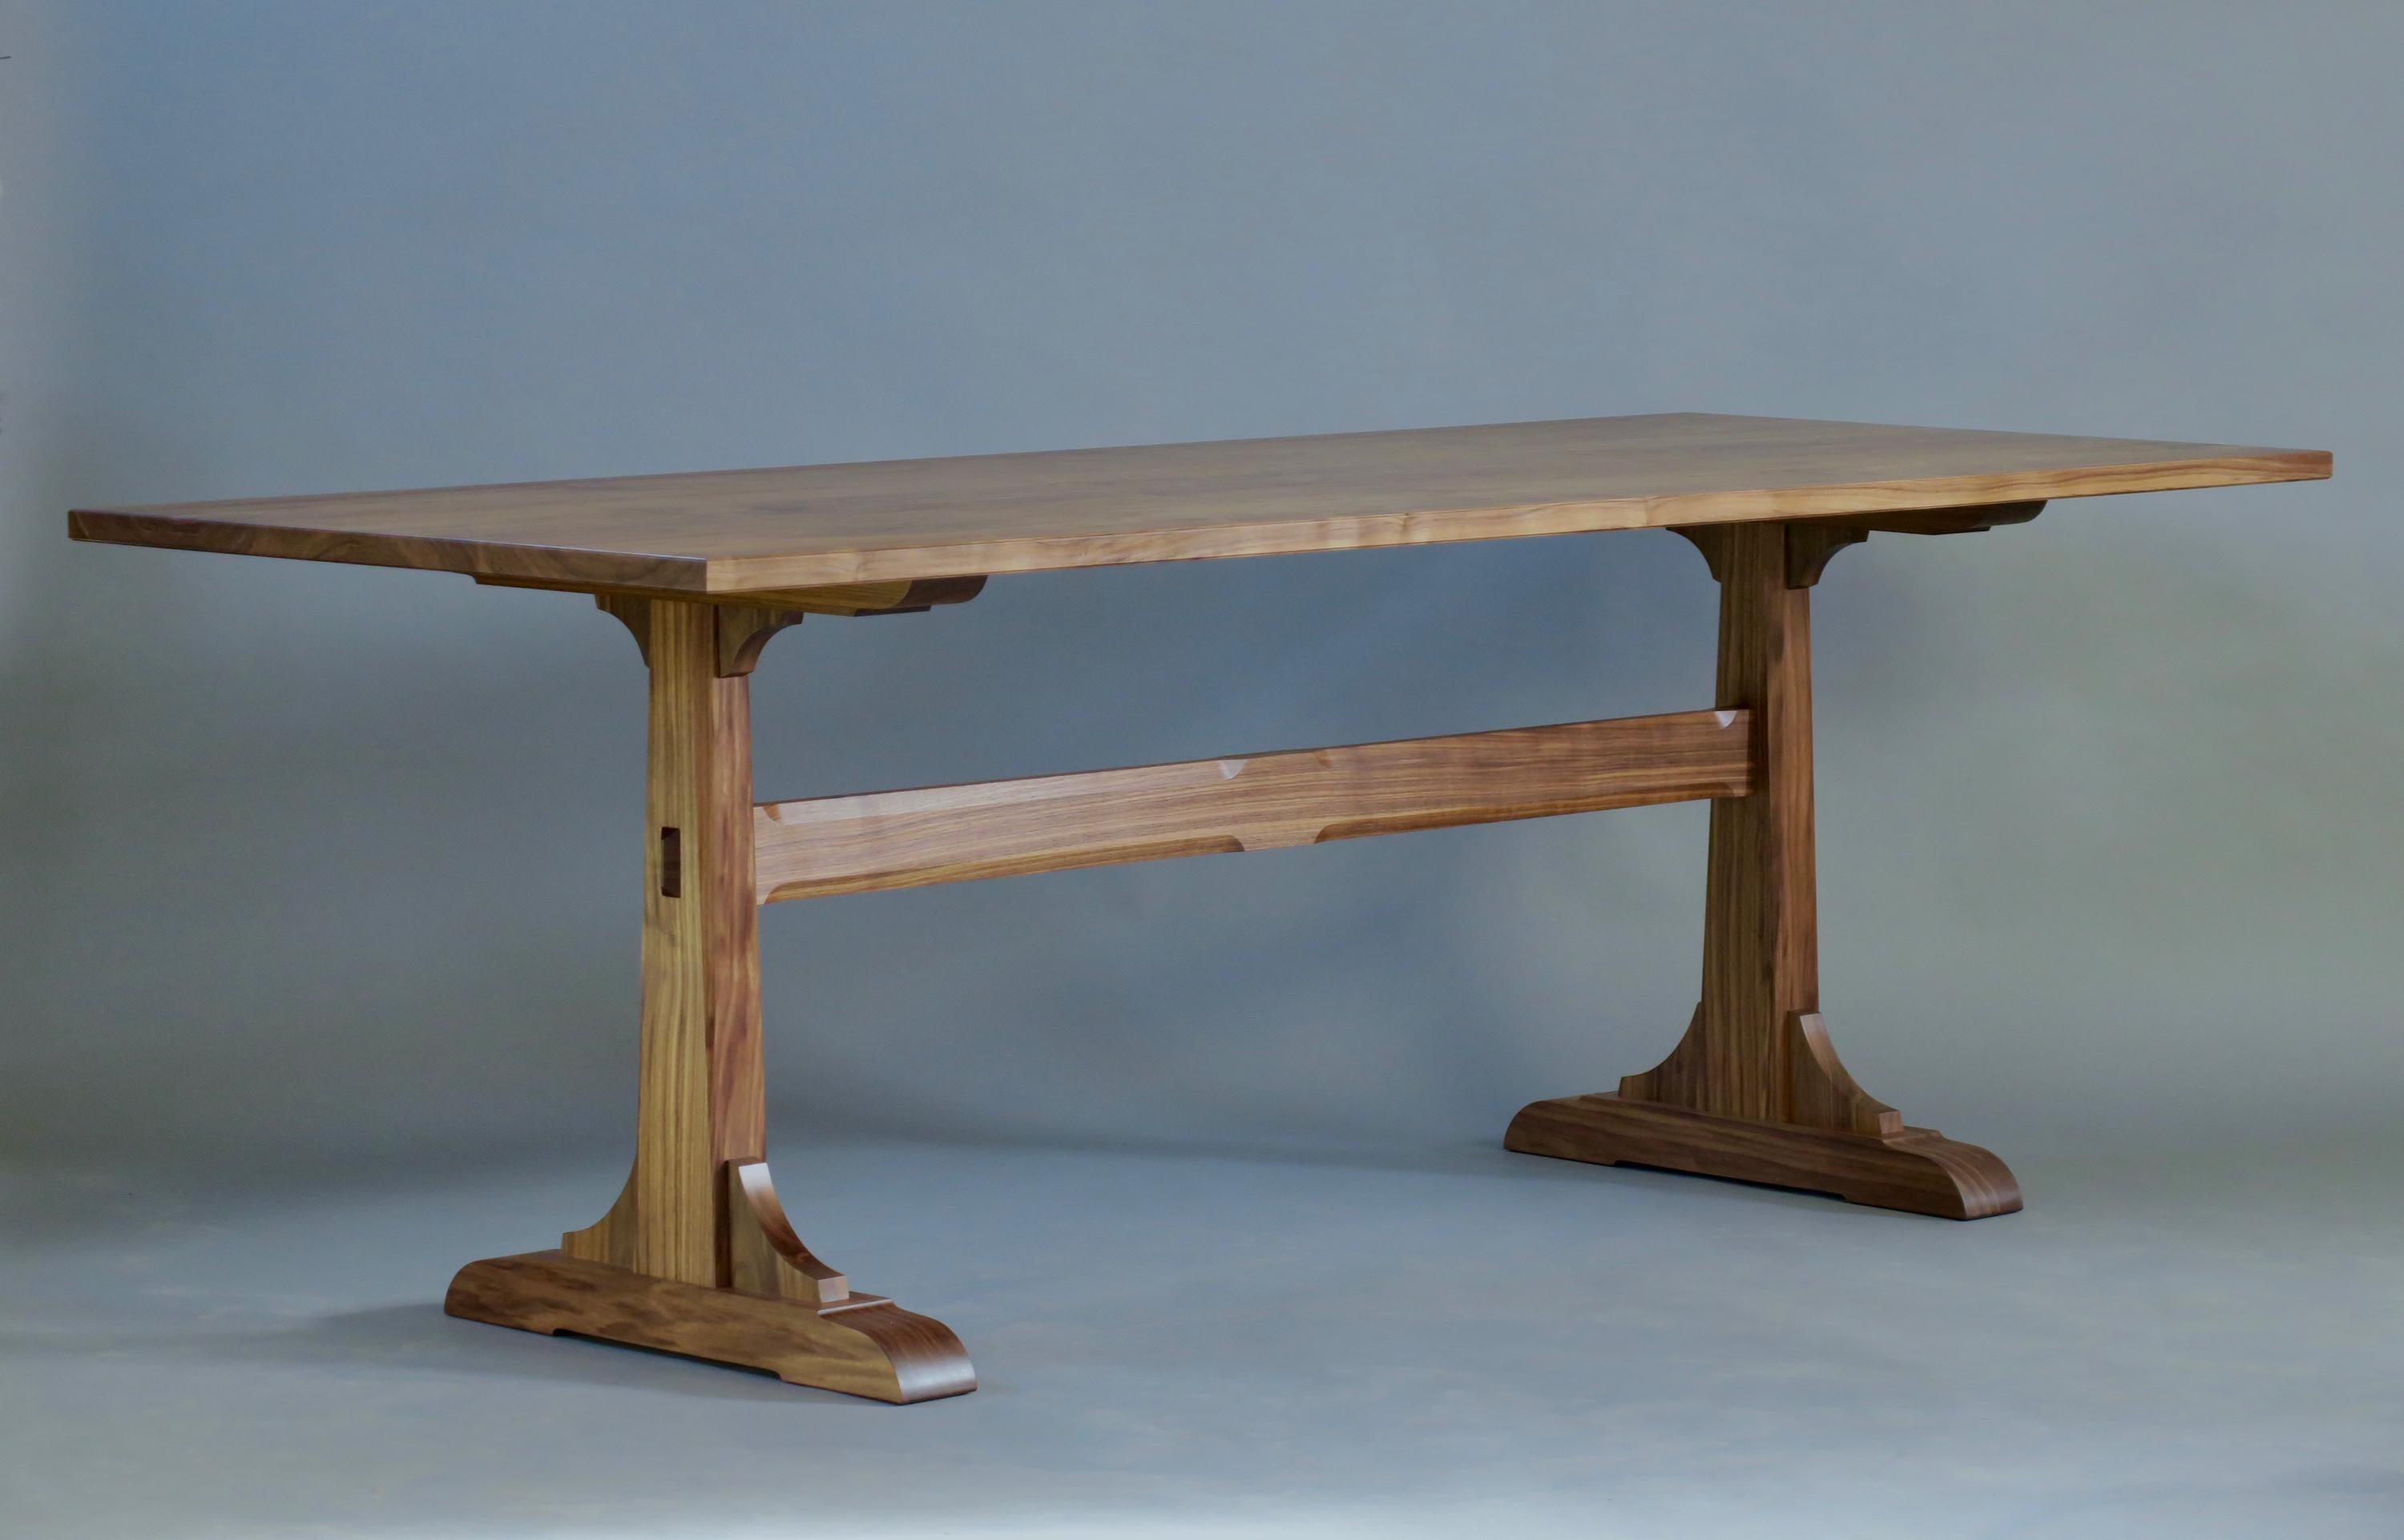 Der Granero-Esstisch ist aus Nussbaum aus Pennsylvania gefertigt und verfügt über eine zeitgenössische Gestellstruktur. Er misst 34